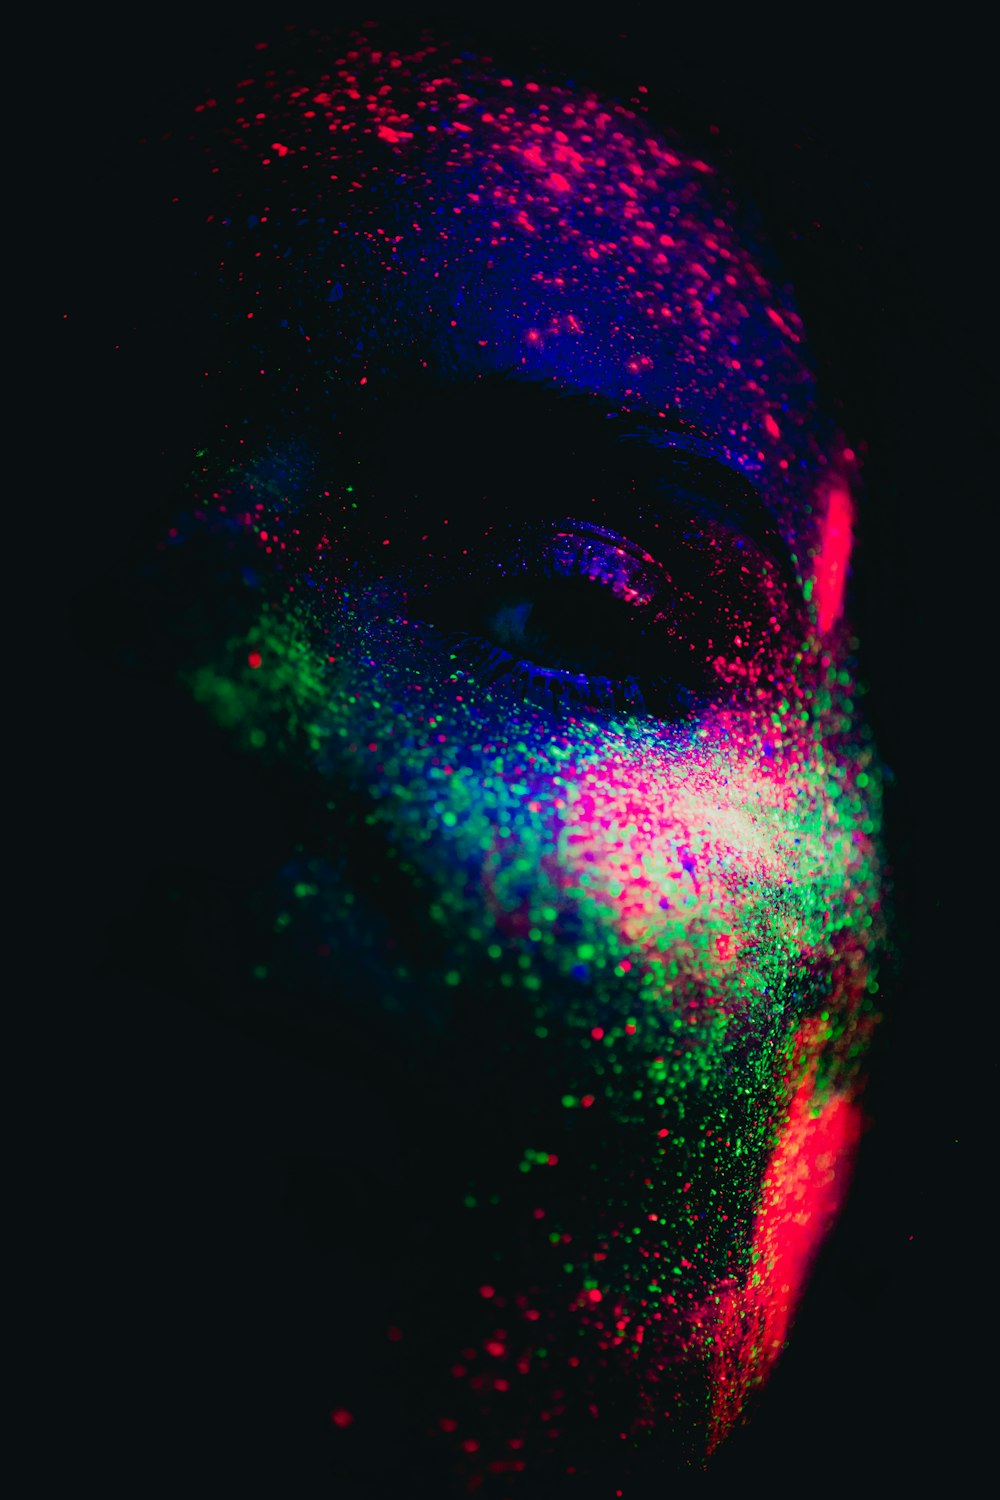 Il volto di un uomo coperto di polvere colorata